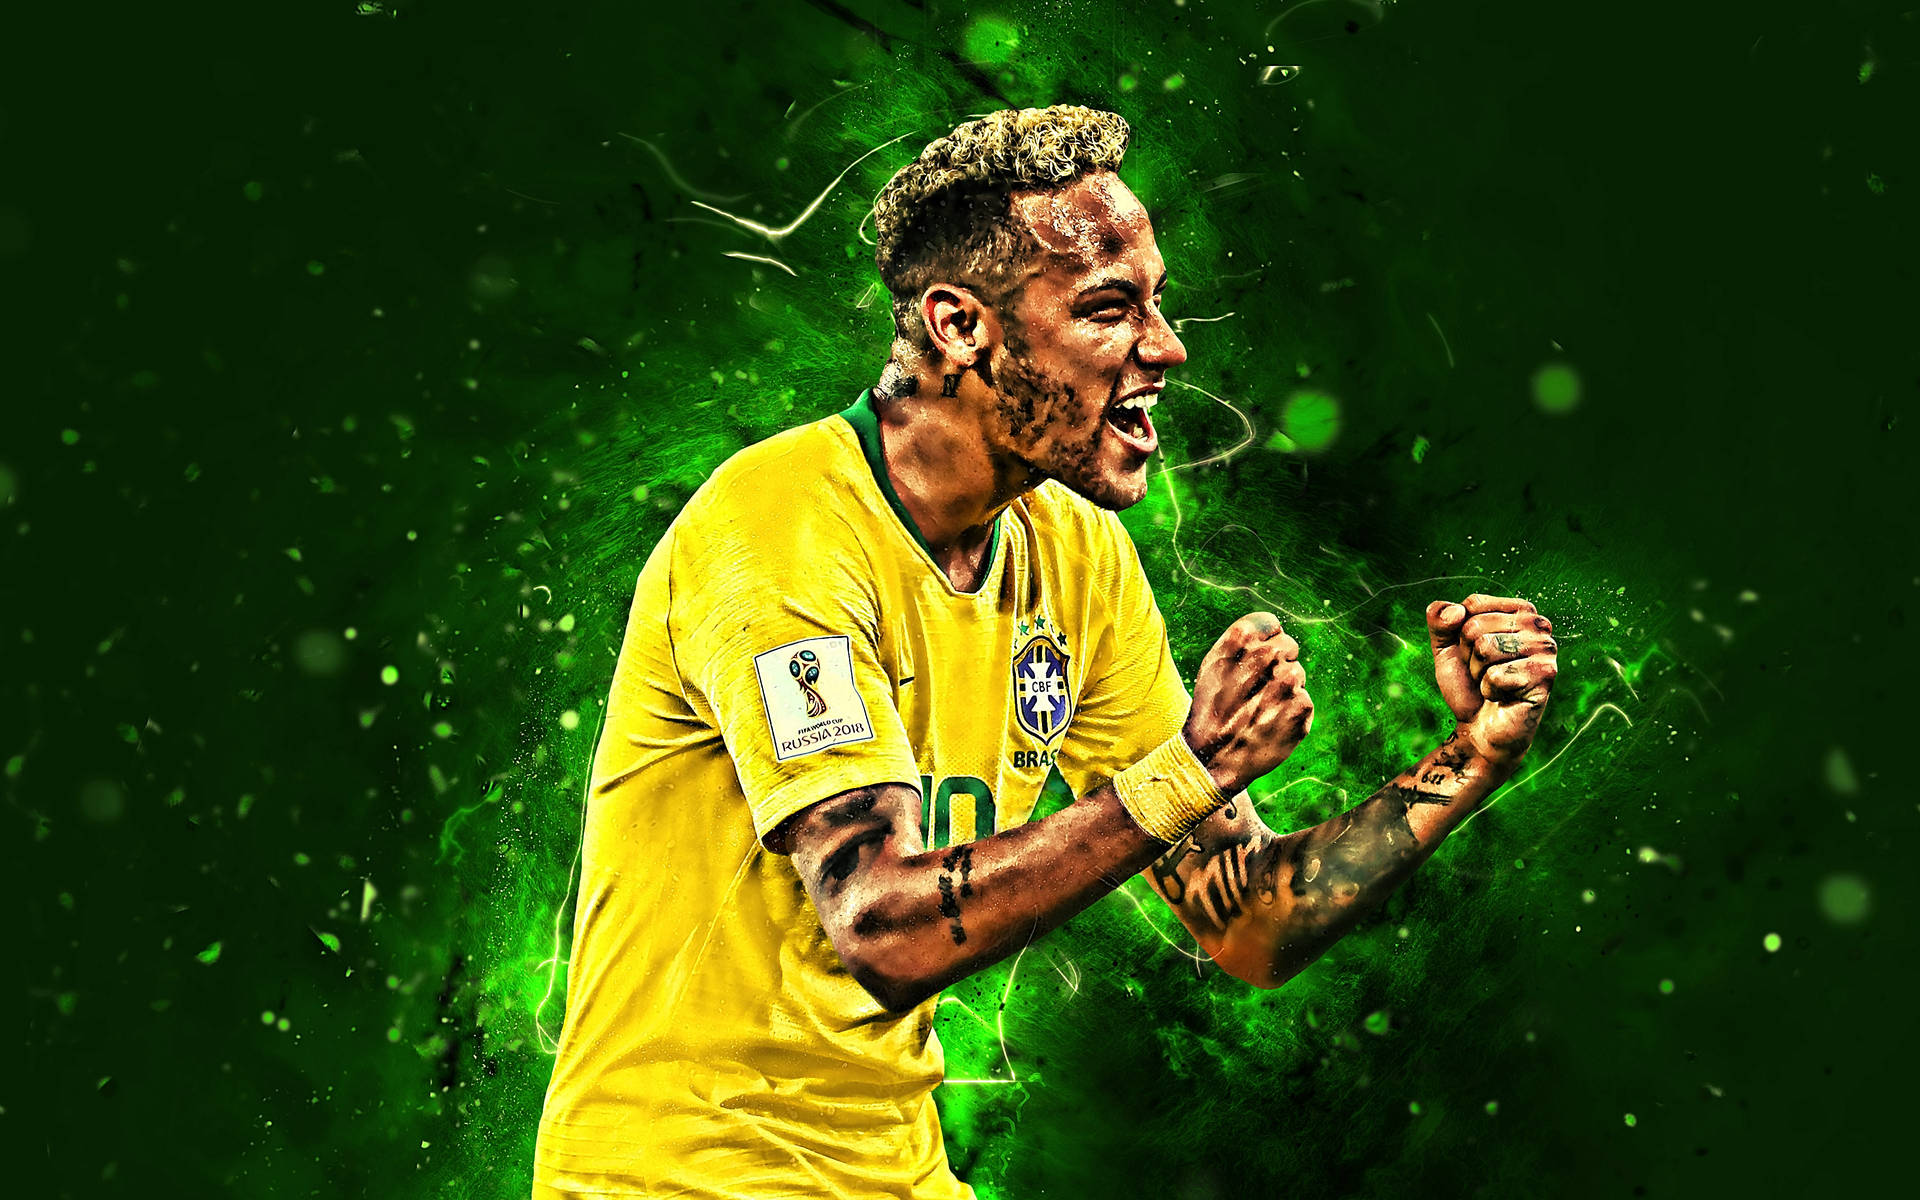 Fanart Of Neymar Jr In Yellow Wallpaper